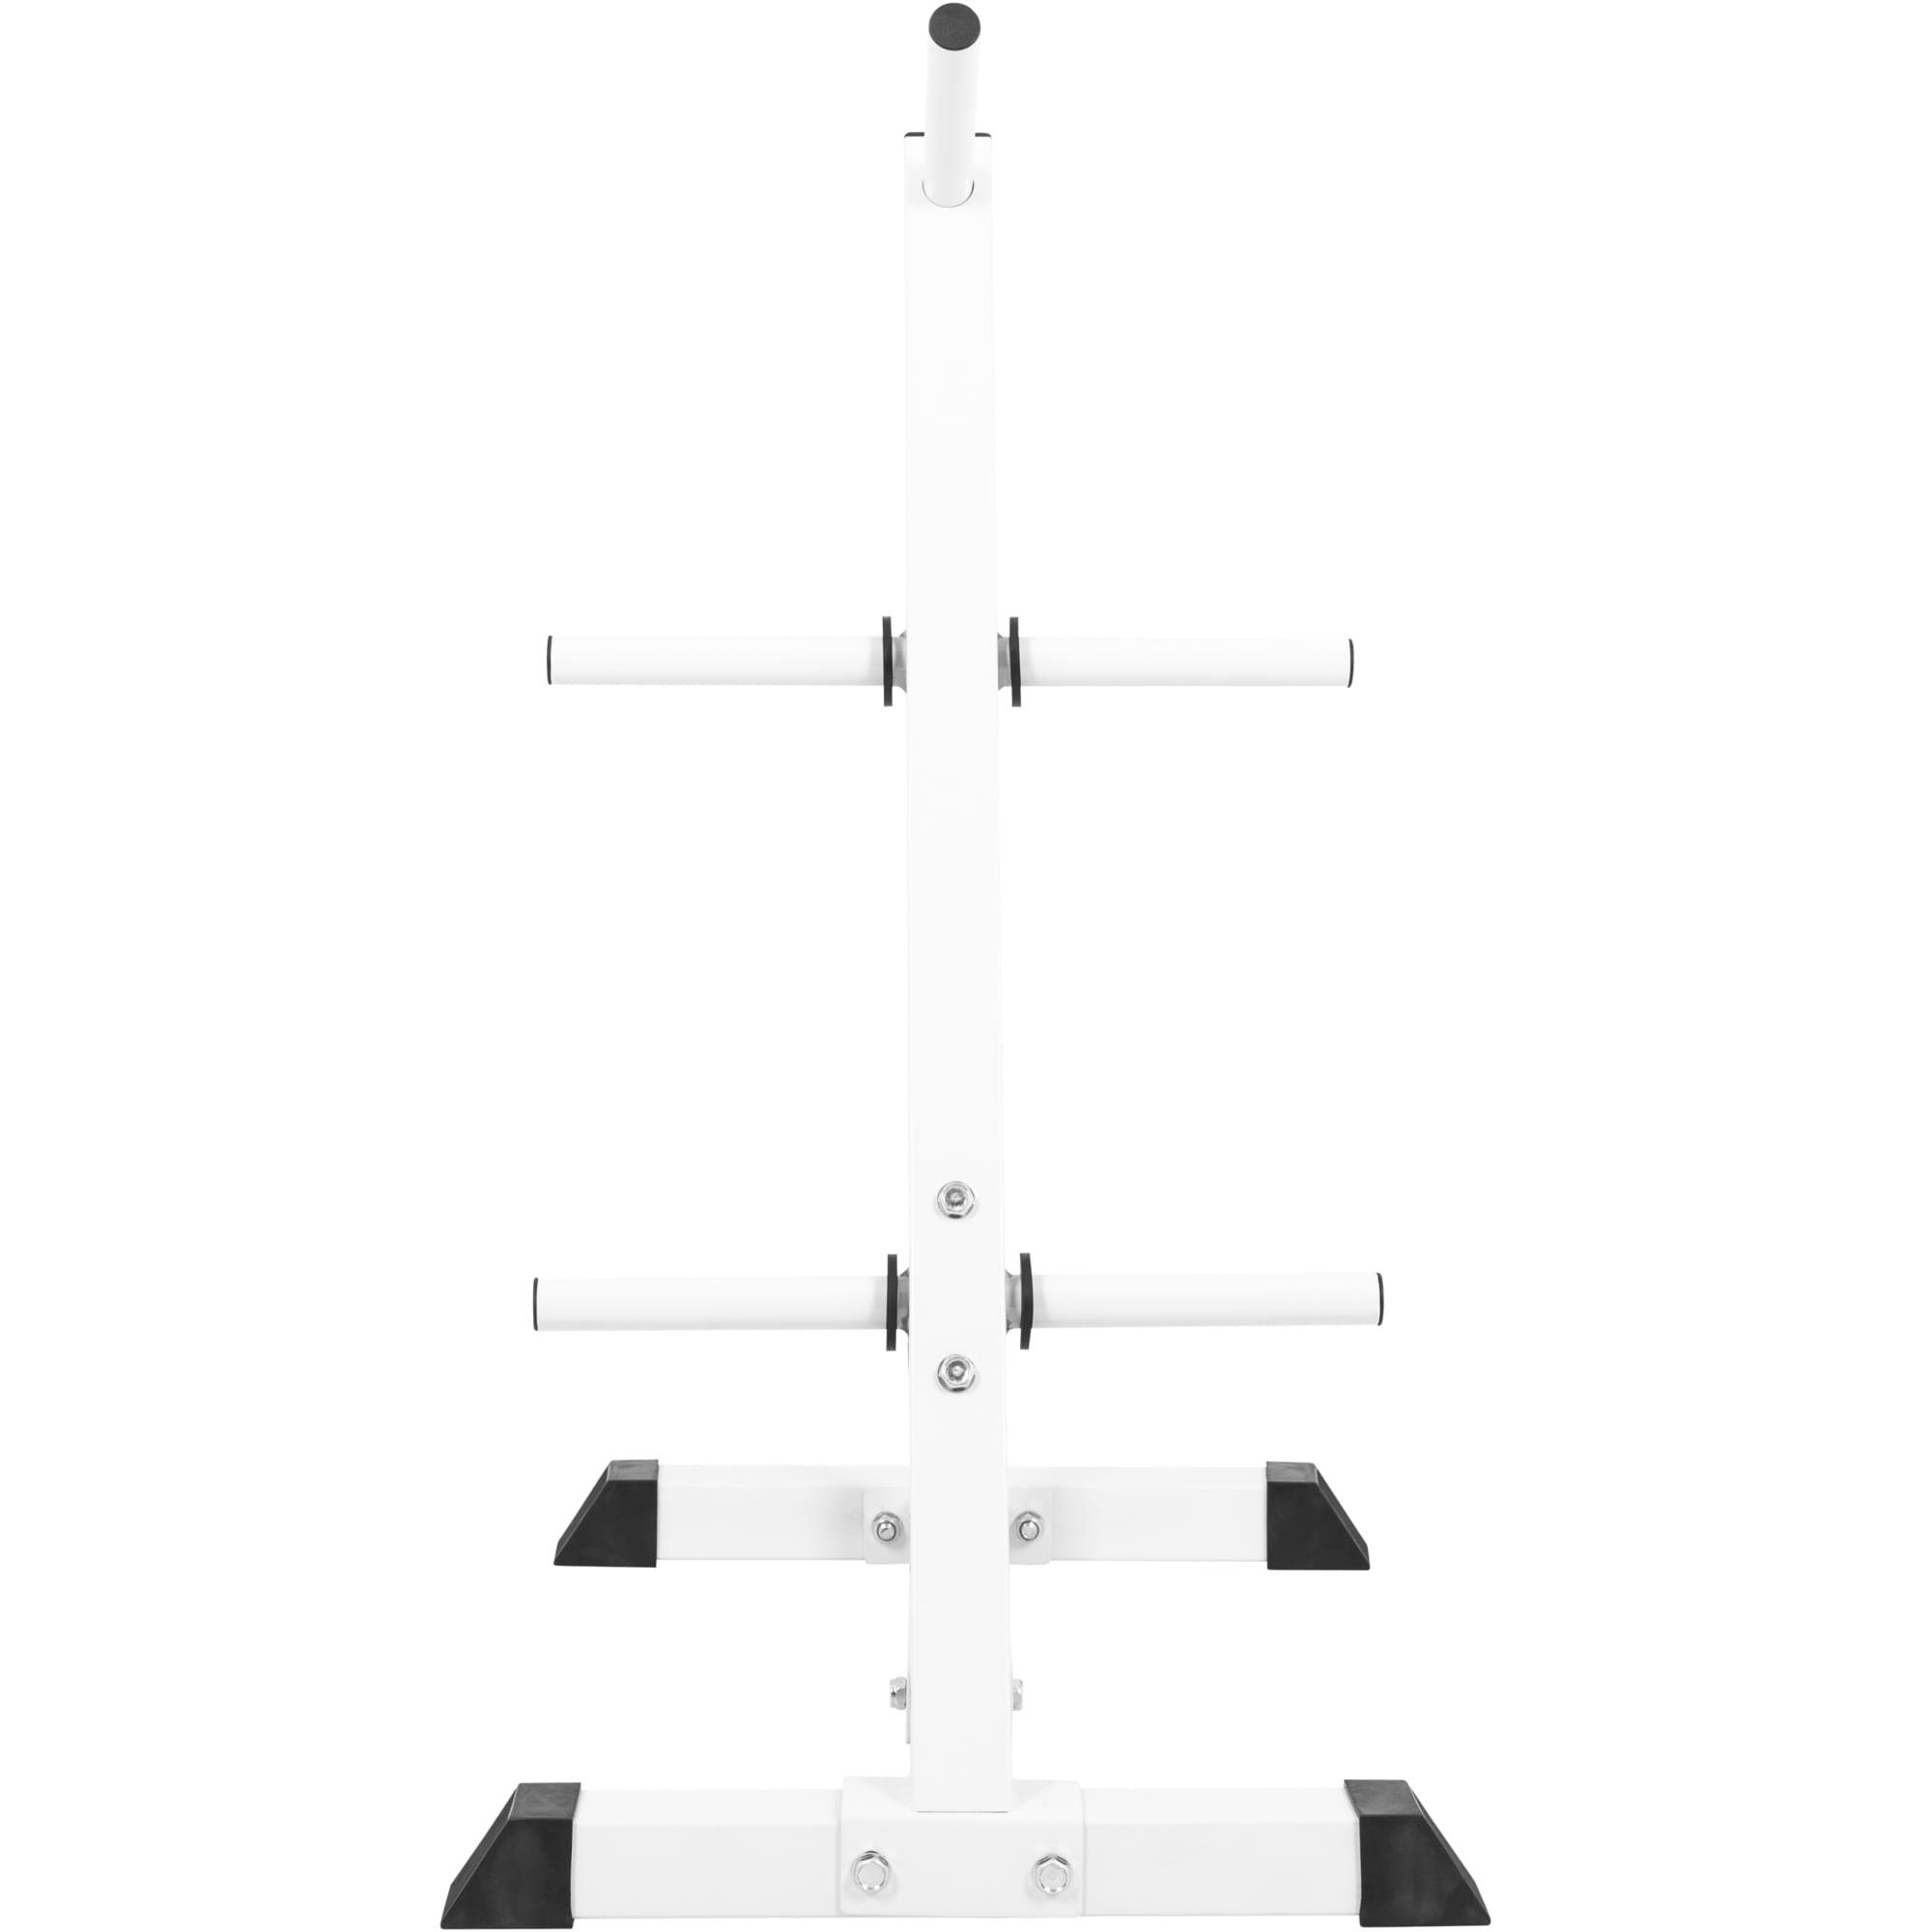 GORILLA Hantelscheibenständer 30 Stangen, Stahl, bis 6 kg, SPORTS Schwarz/Weiß Scheibenaufnahme, mit 200 mm